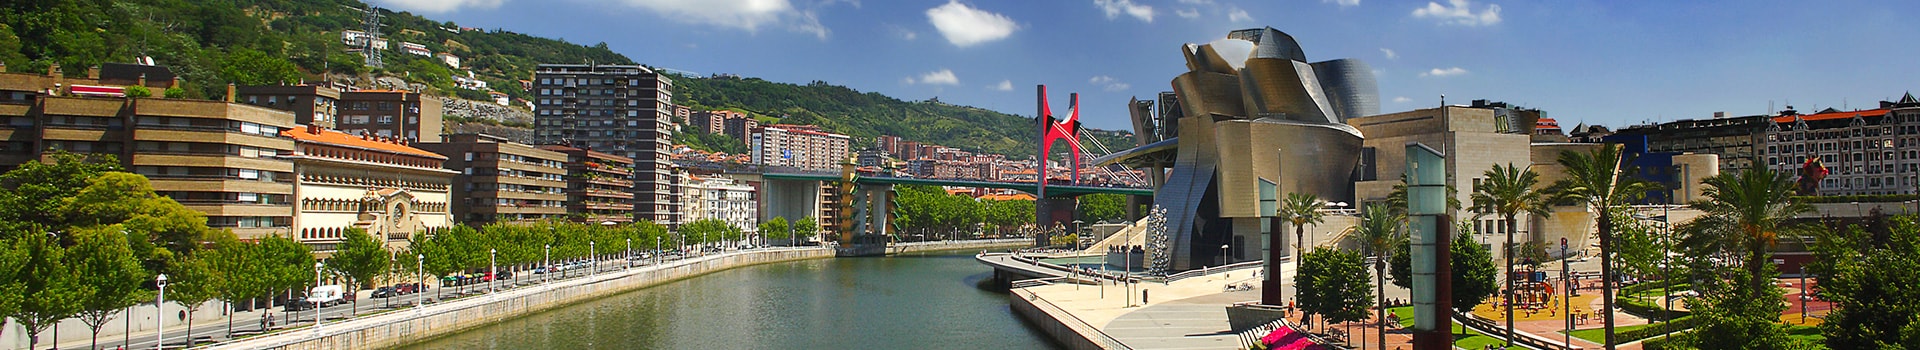 Genève - Bilbao